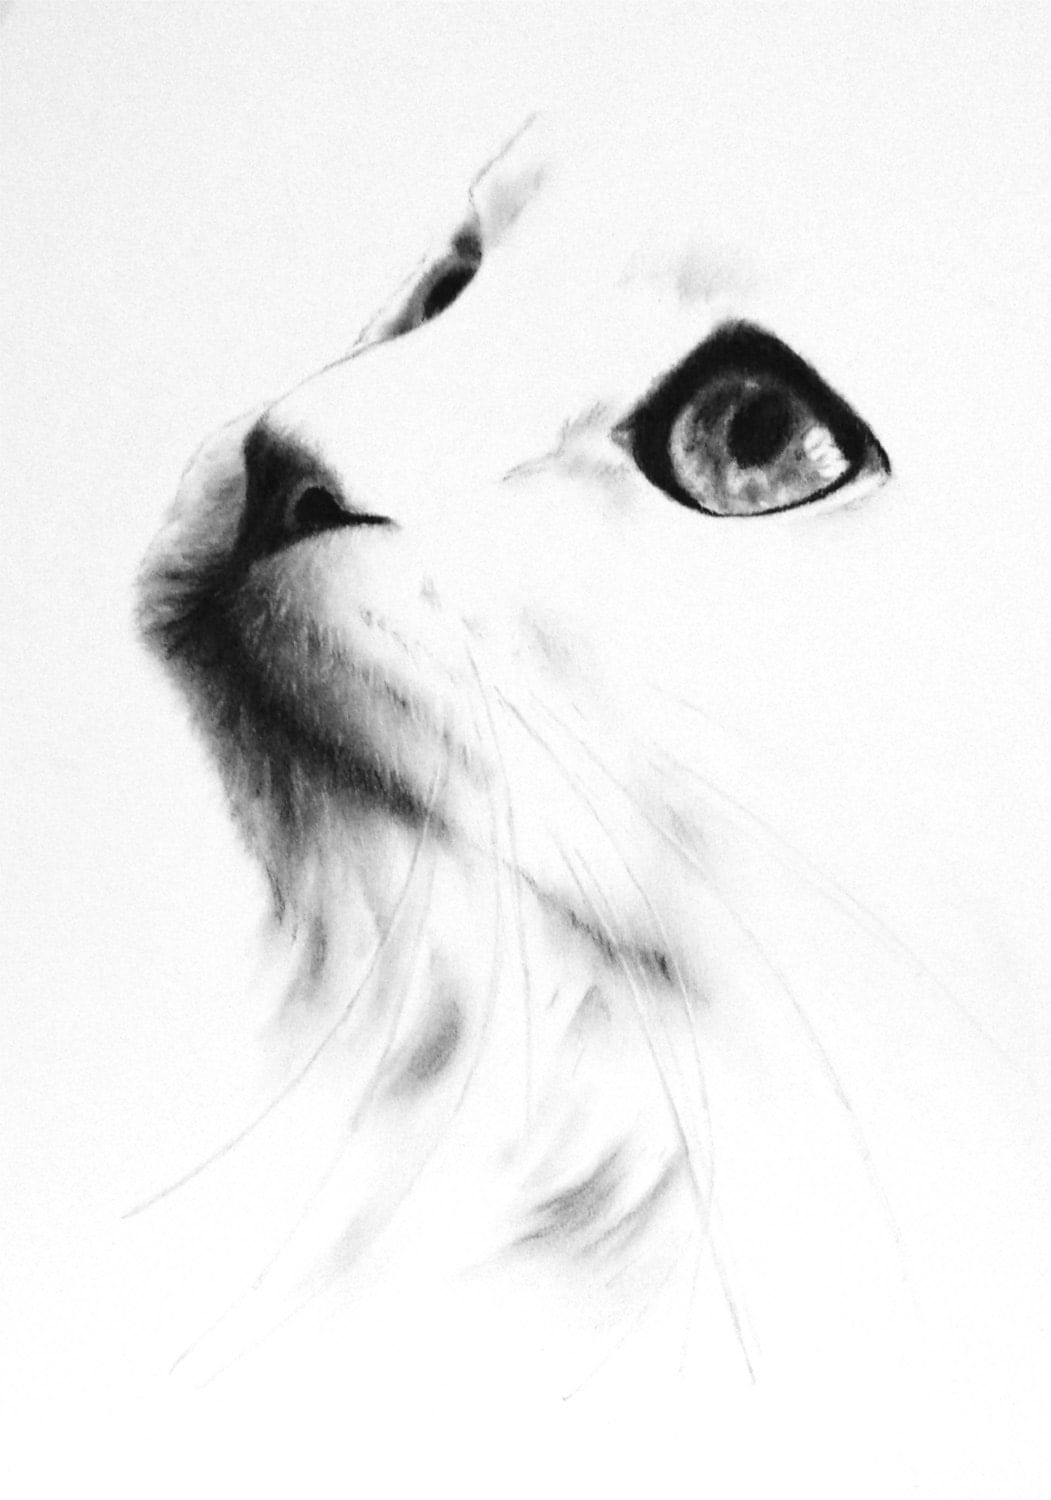 Белый кот рисунок карандашом. Наброски белой кошки карандашом. Белая кошка карандашный набросок. Кот карандаш набросок профиль. Белые нарисованные картинки